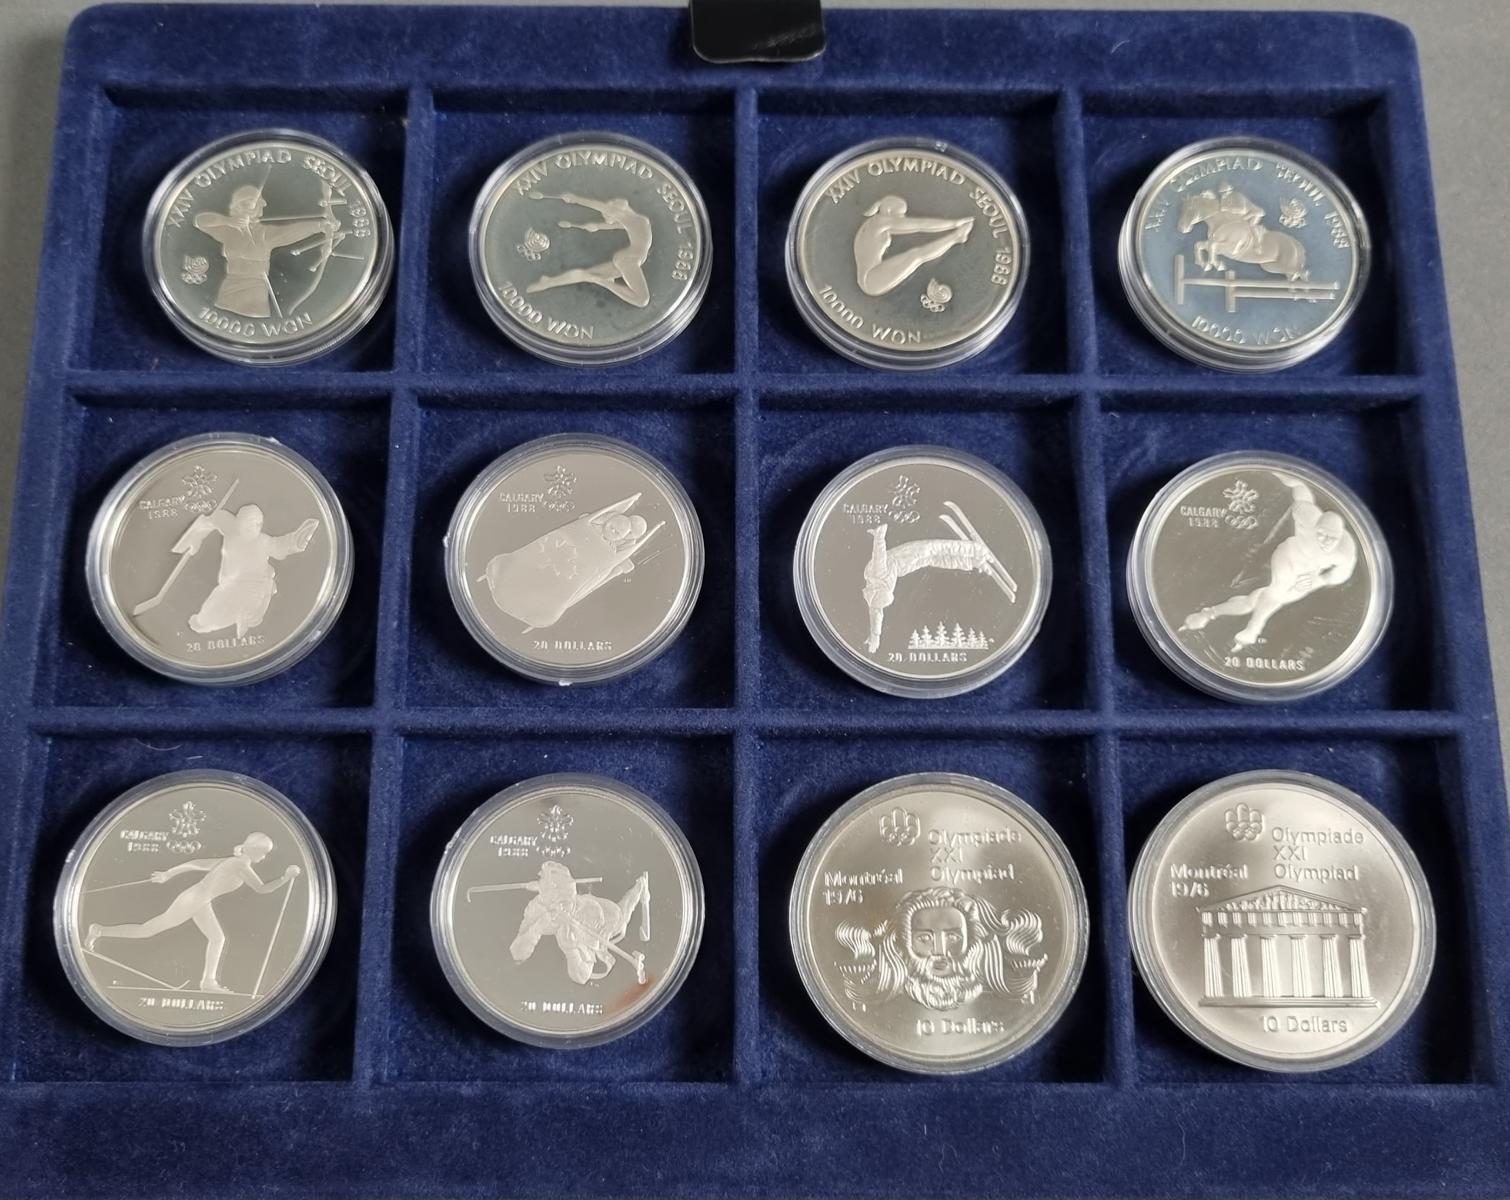 28 Münzen Olympiade1988 davon 27 aus Silber-4